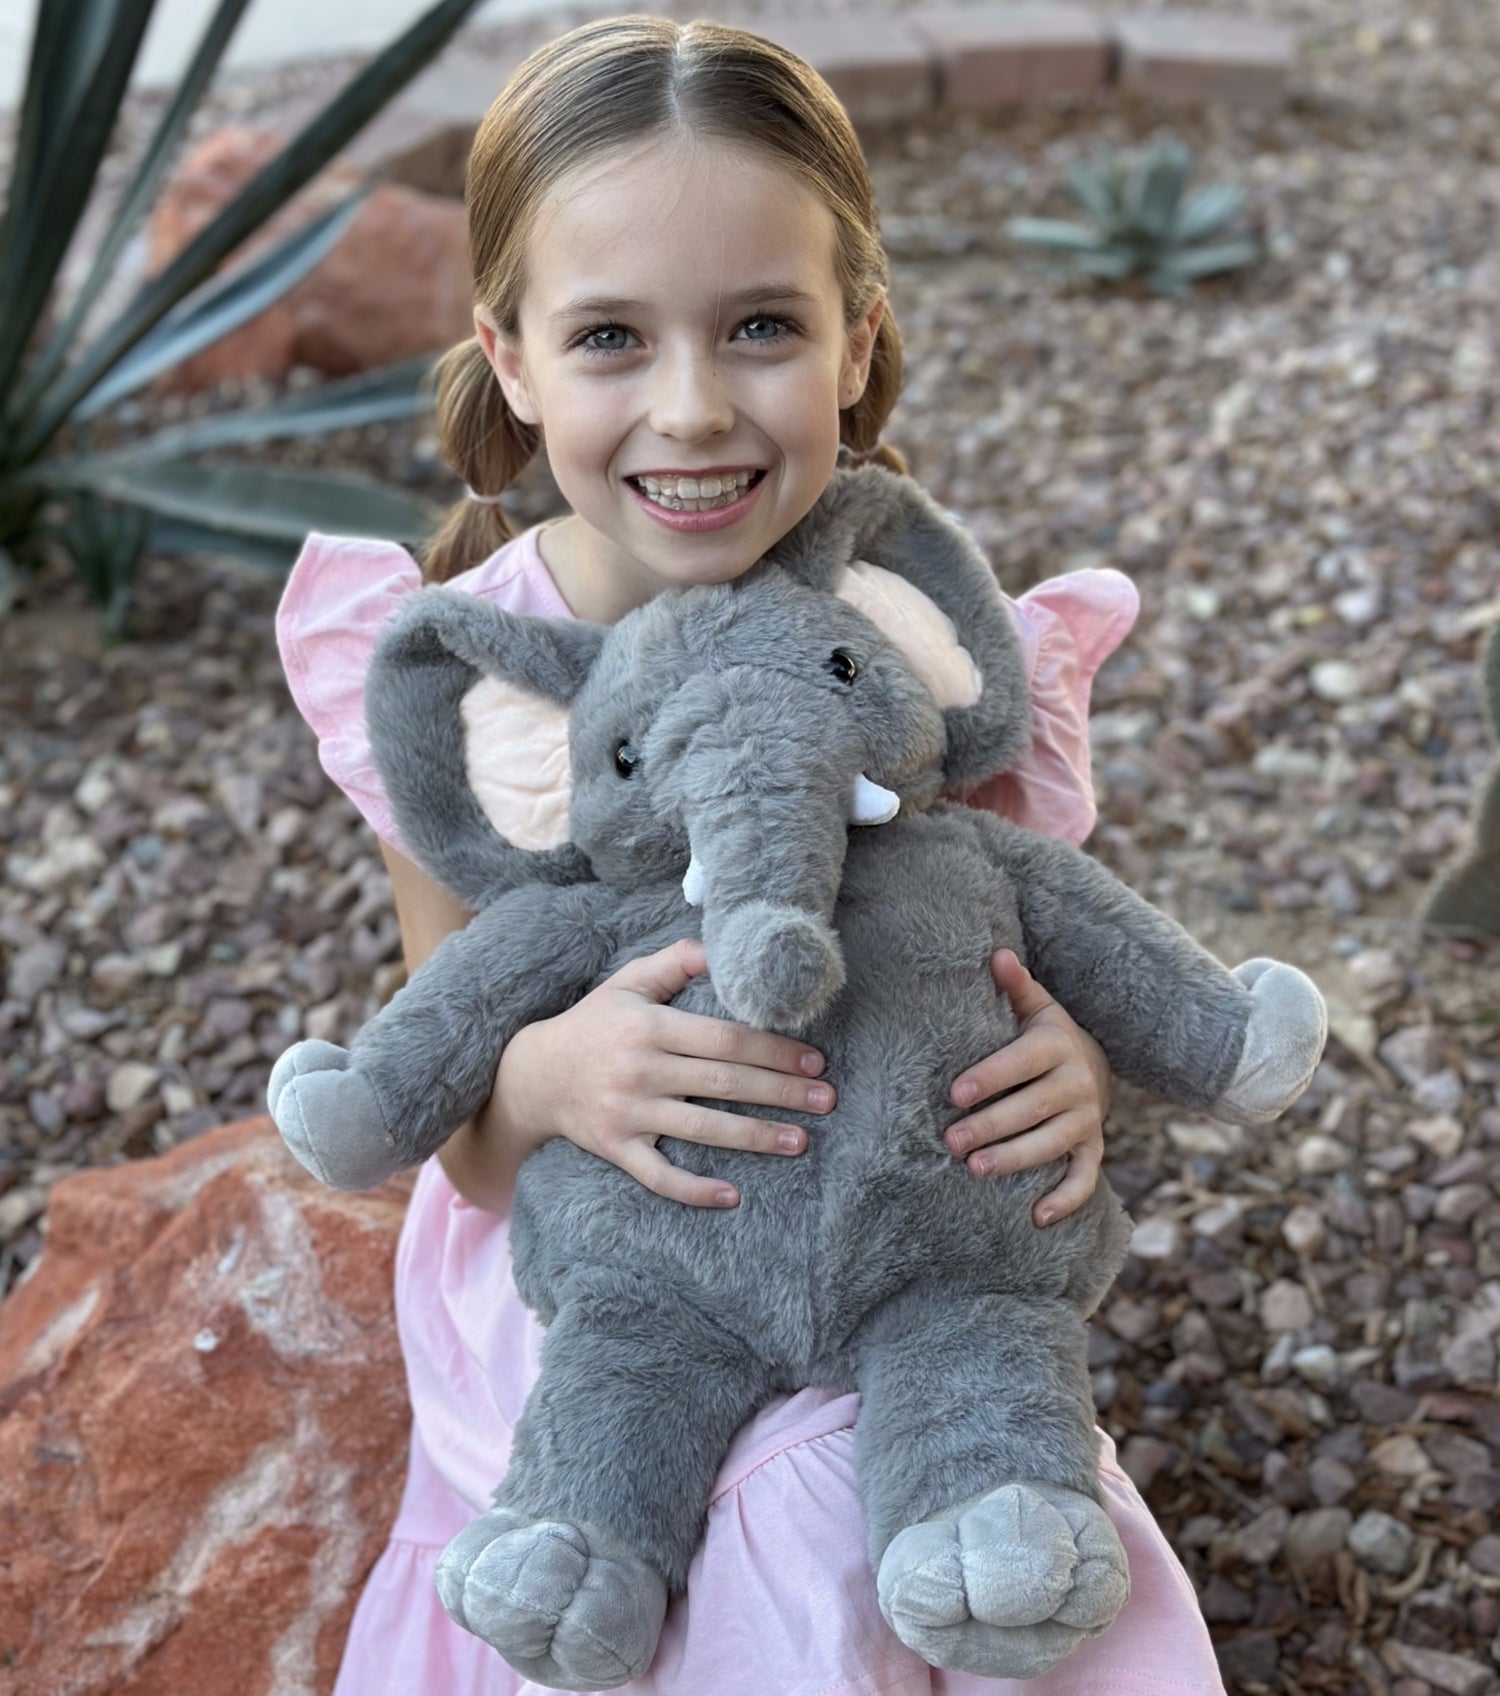 Elephant Plush Toy Set, Grey, 20 Inches